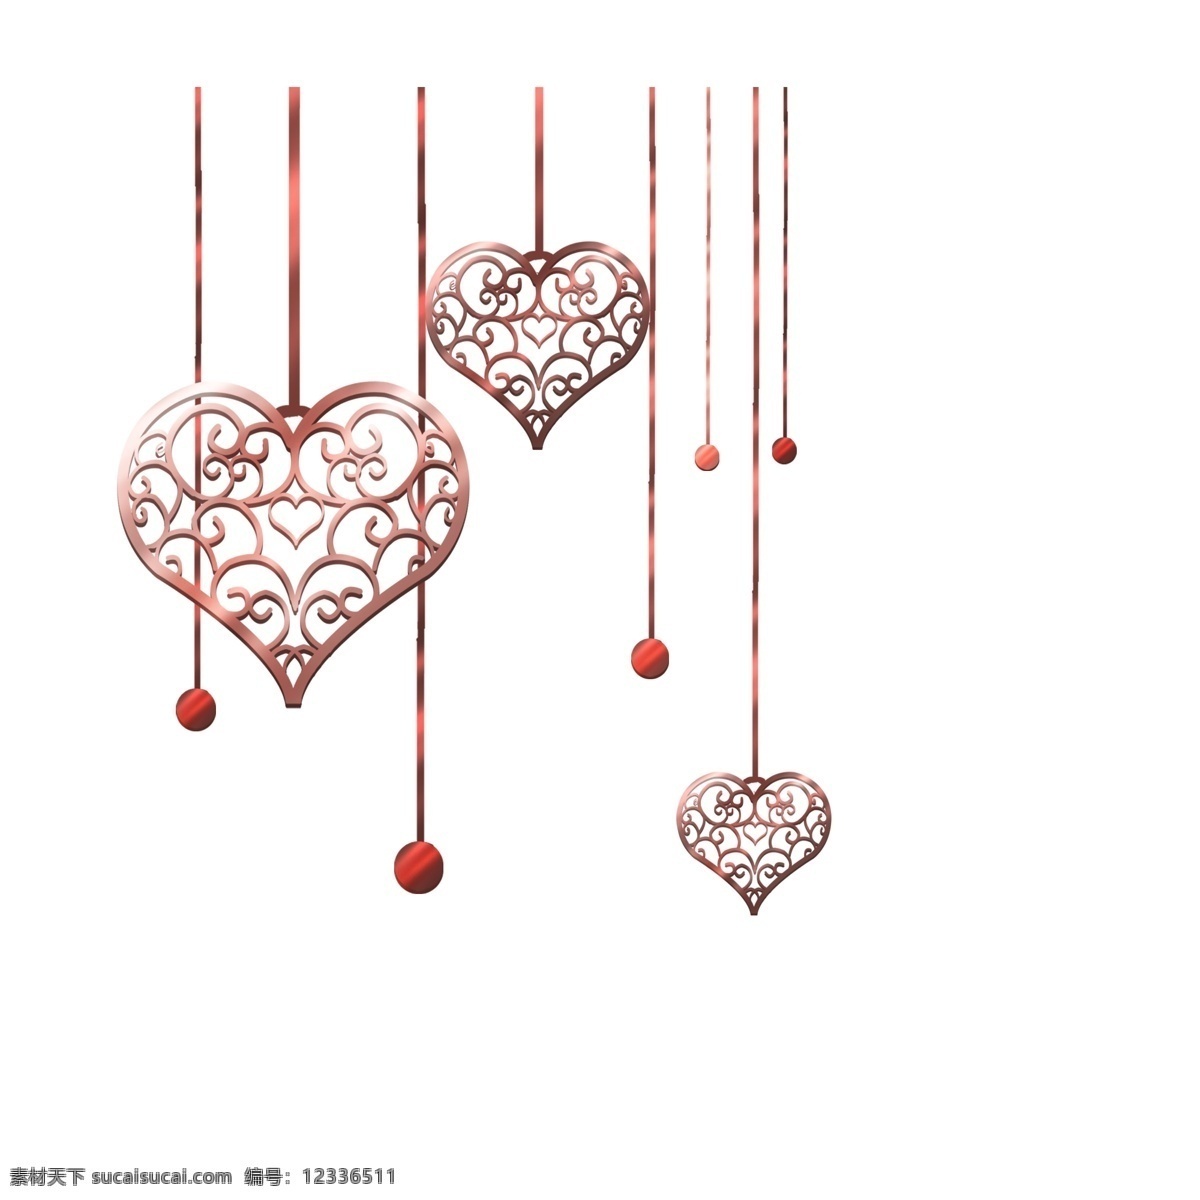 镂空 爱心 装饰 插画 镂空的爱心 爱心气球 卡通插画 气球插画 爱情插画 礼物插画 吊挂的爱心